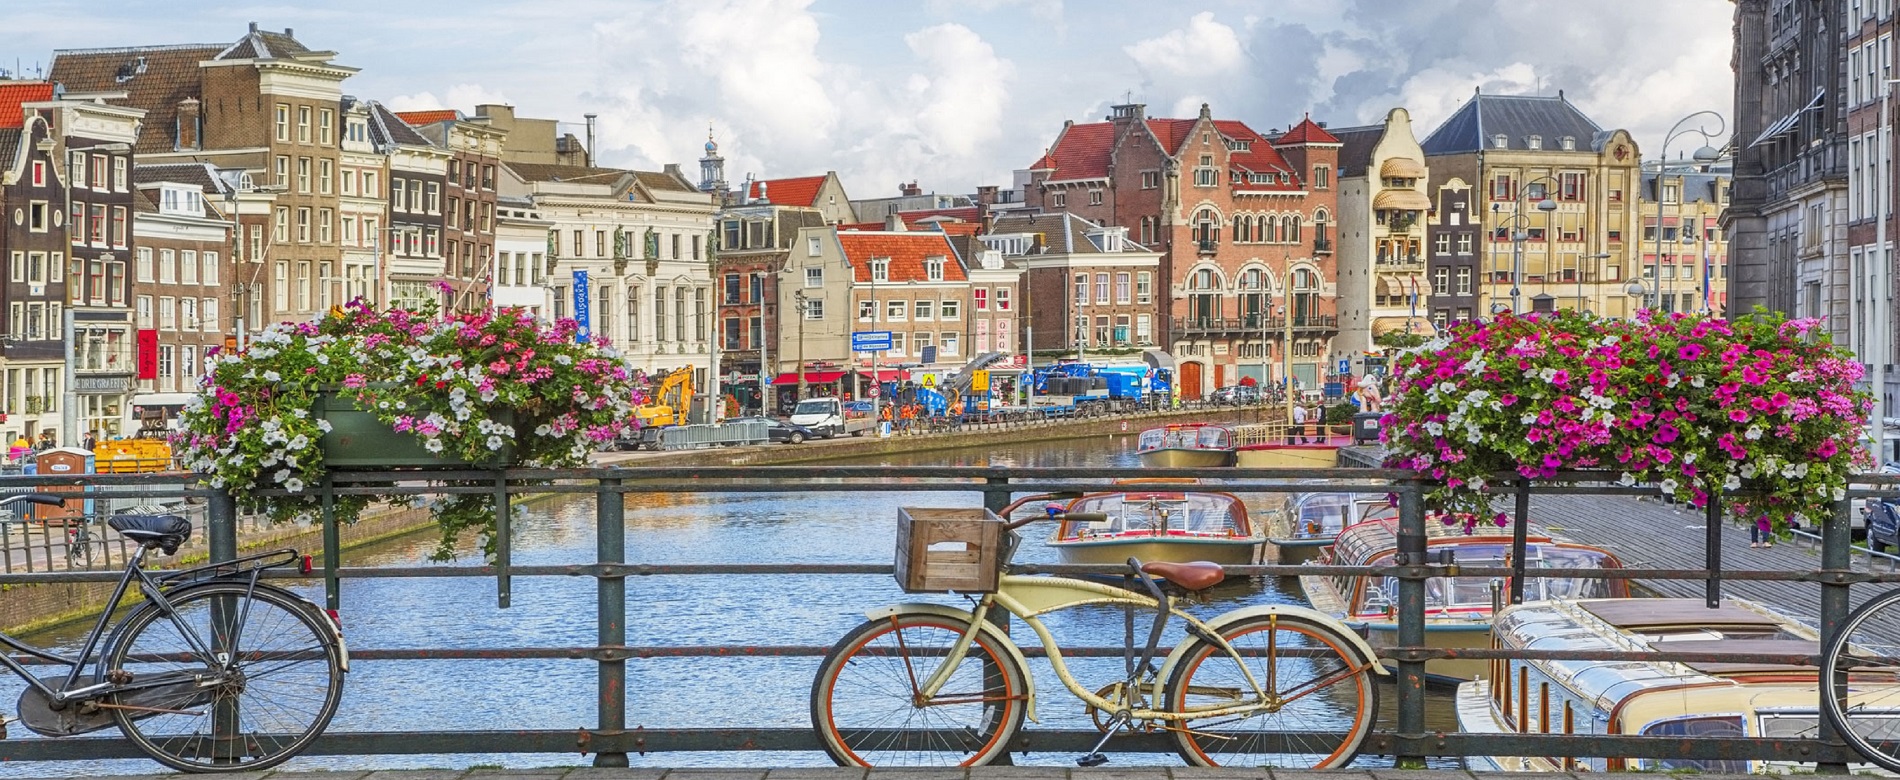 Vista de un puente de Amsterdam que atraviesa un canal y se aprecian los edificios.